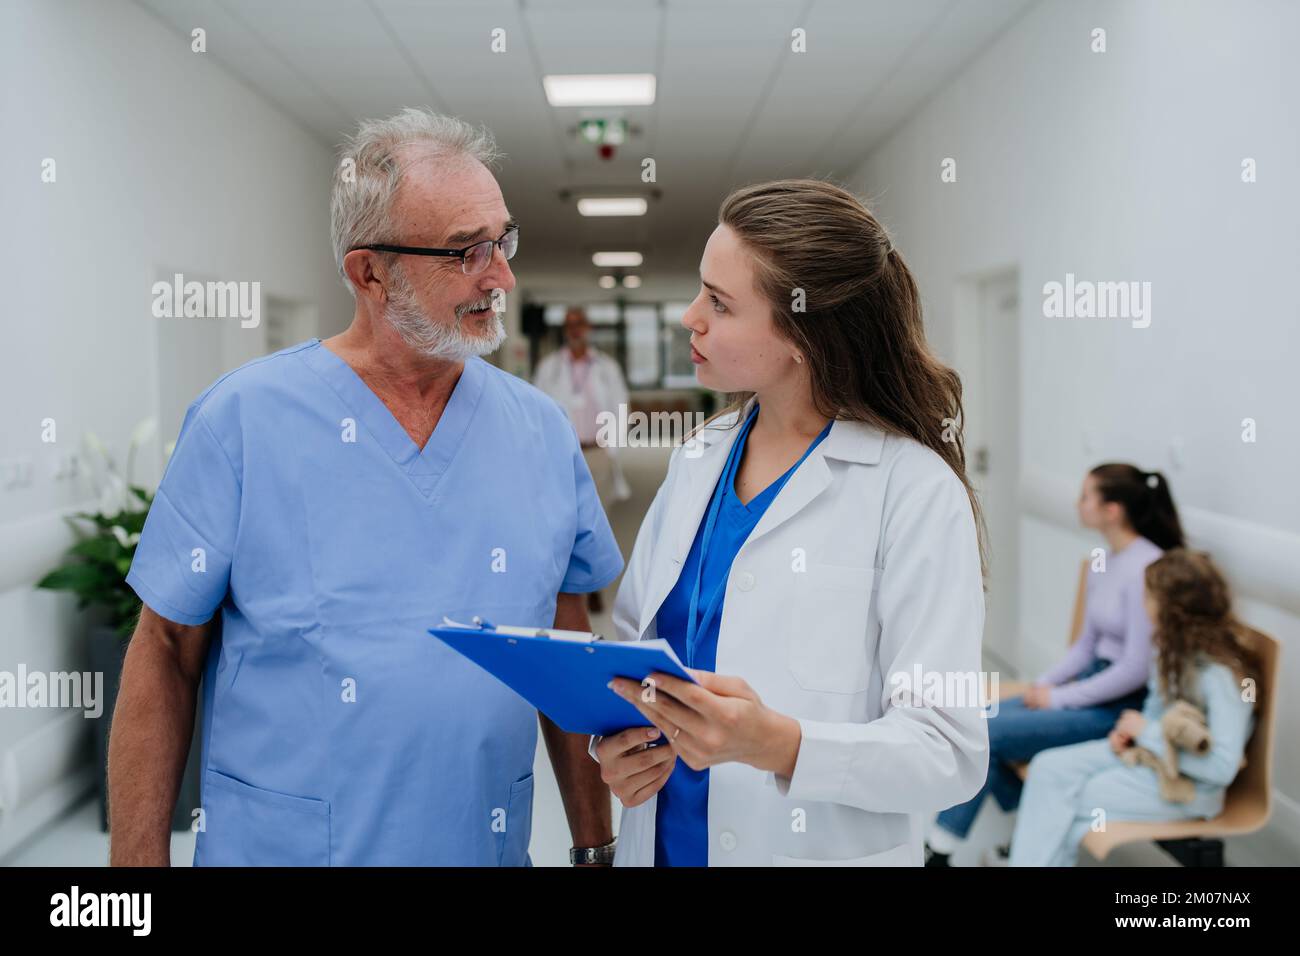 Un médecin plus âgé donne des conseils à son jeune collègue, discutant dans le couloir de l'hôpital. Concept de soins de santé. Banque D'Images